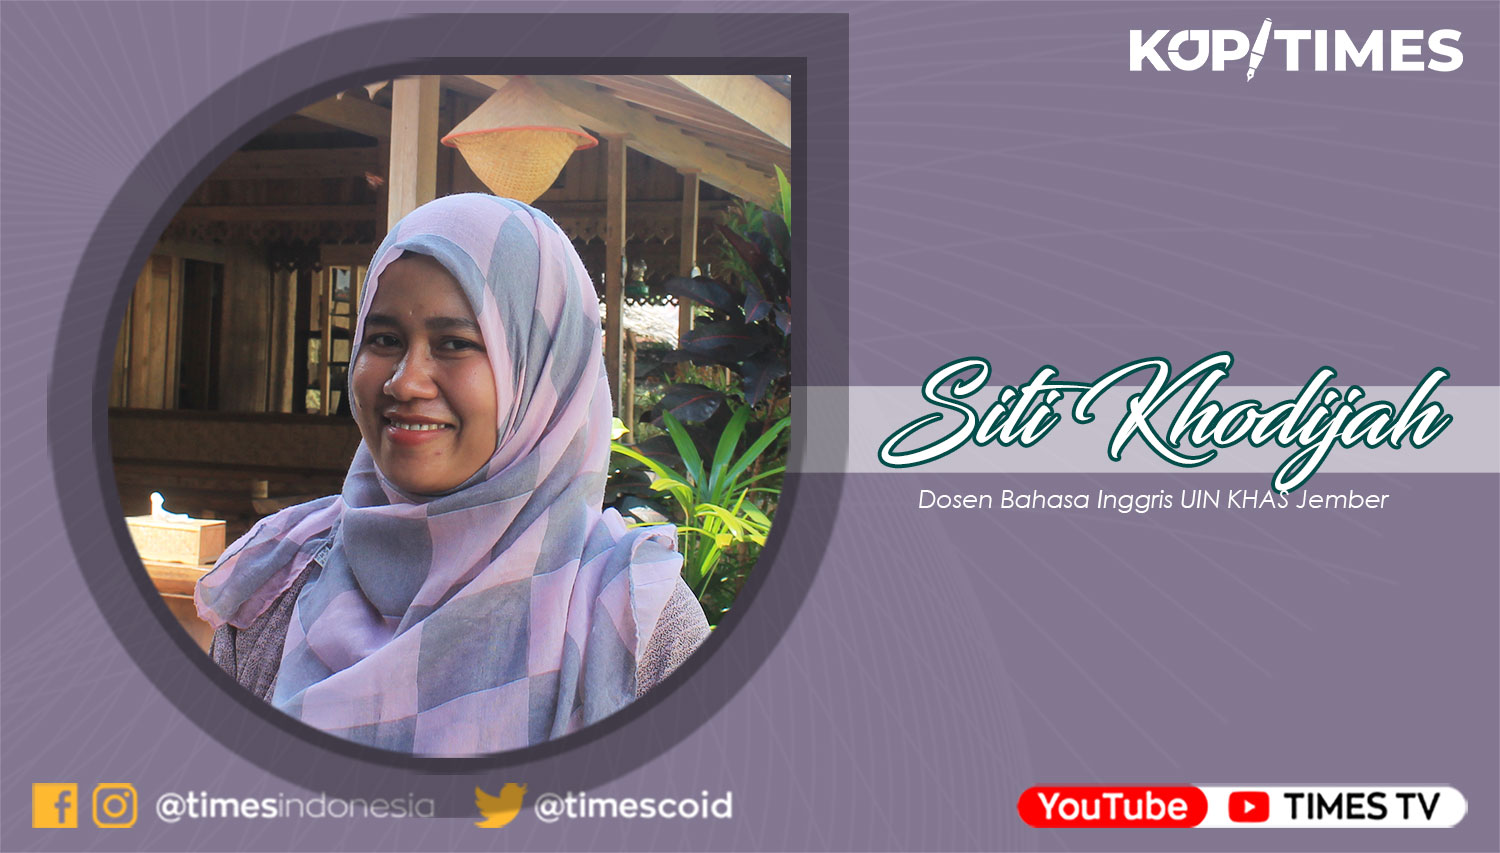 Siti Khodijah, Dosen Bahasa Inggris UIN KHAS Jember.